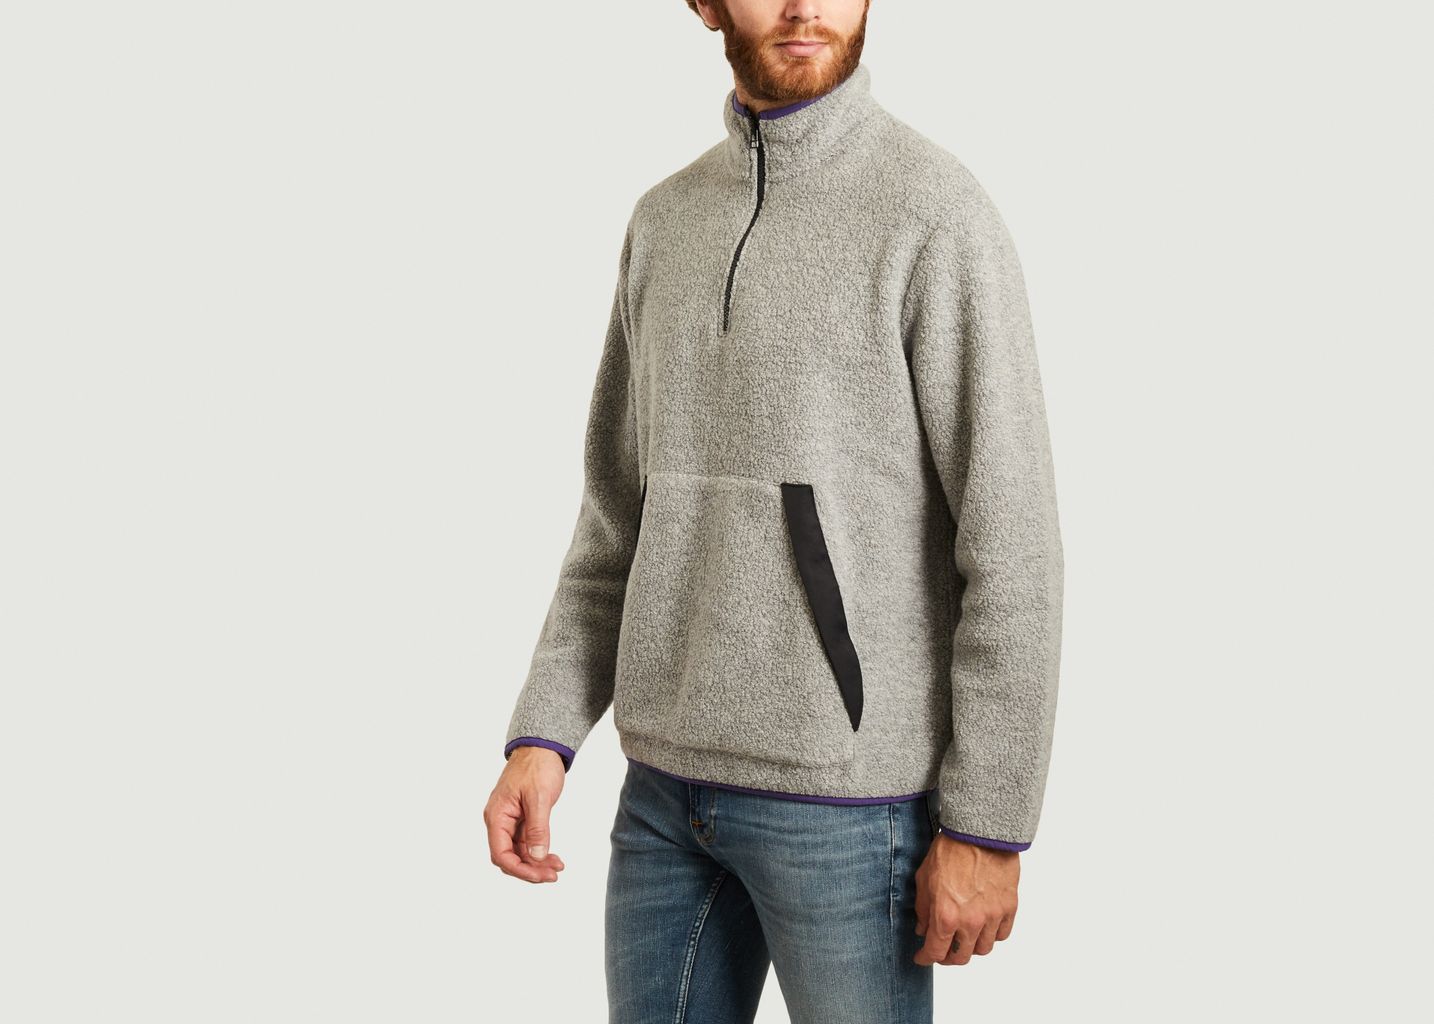 Fleece sweater - Closed